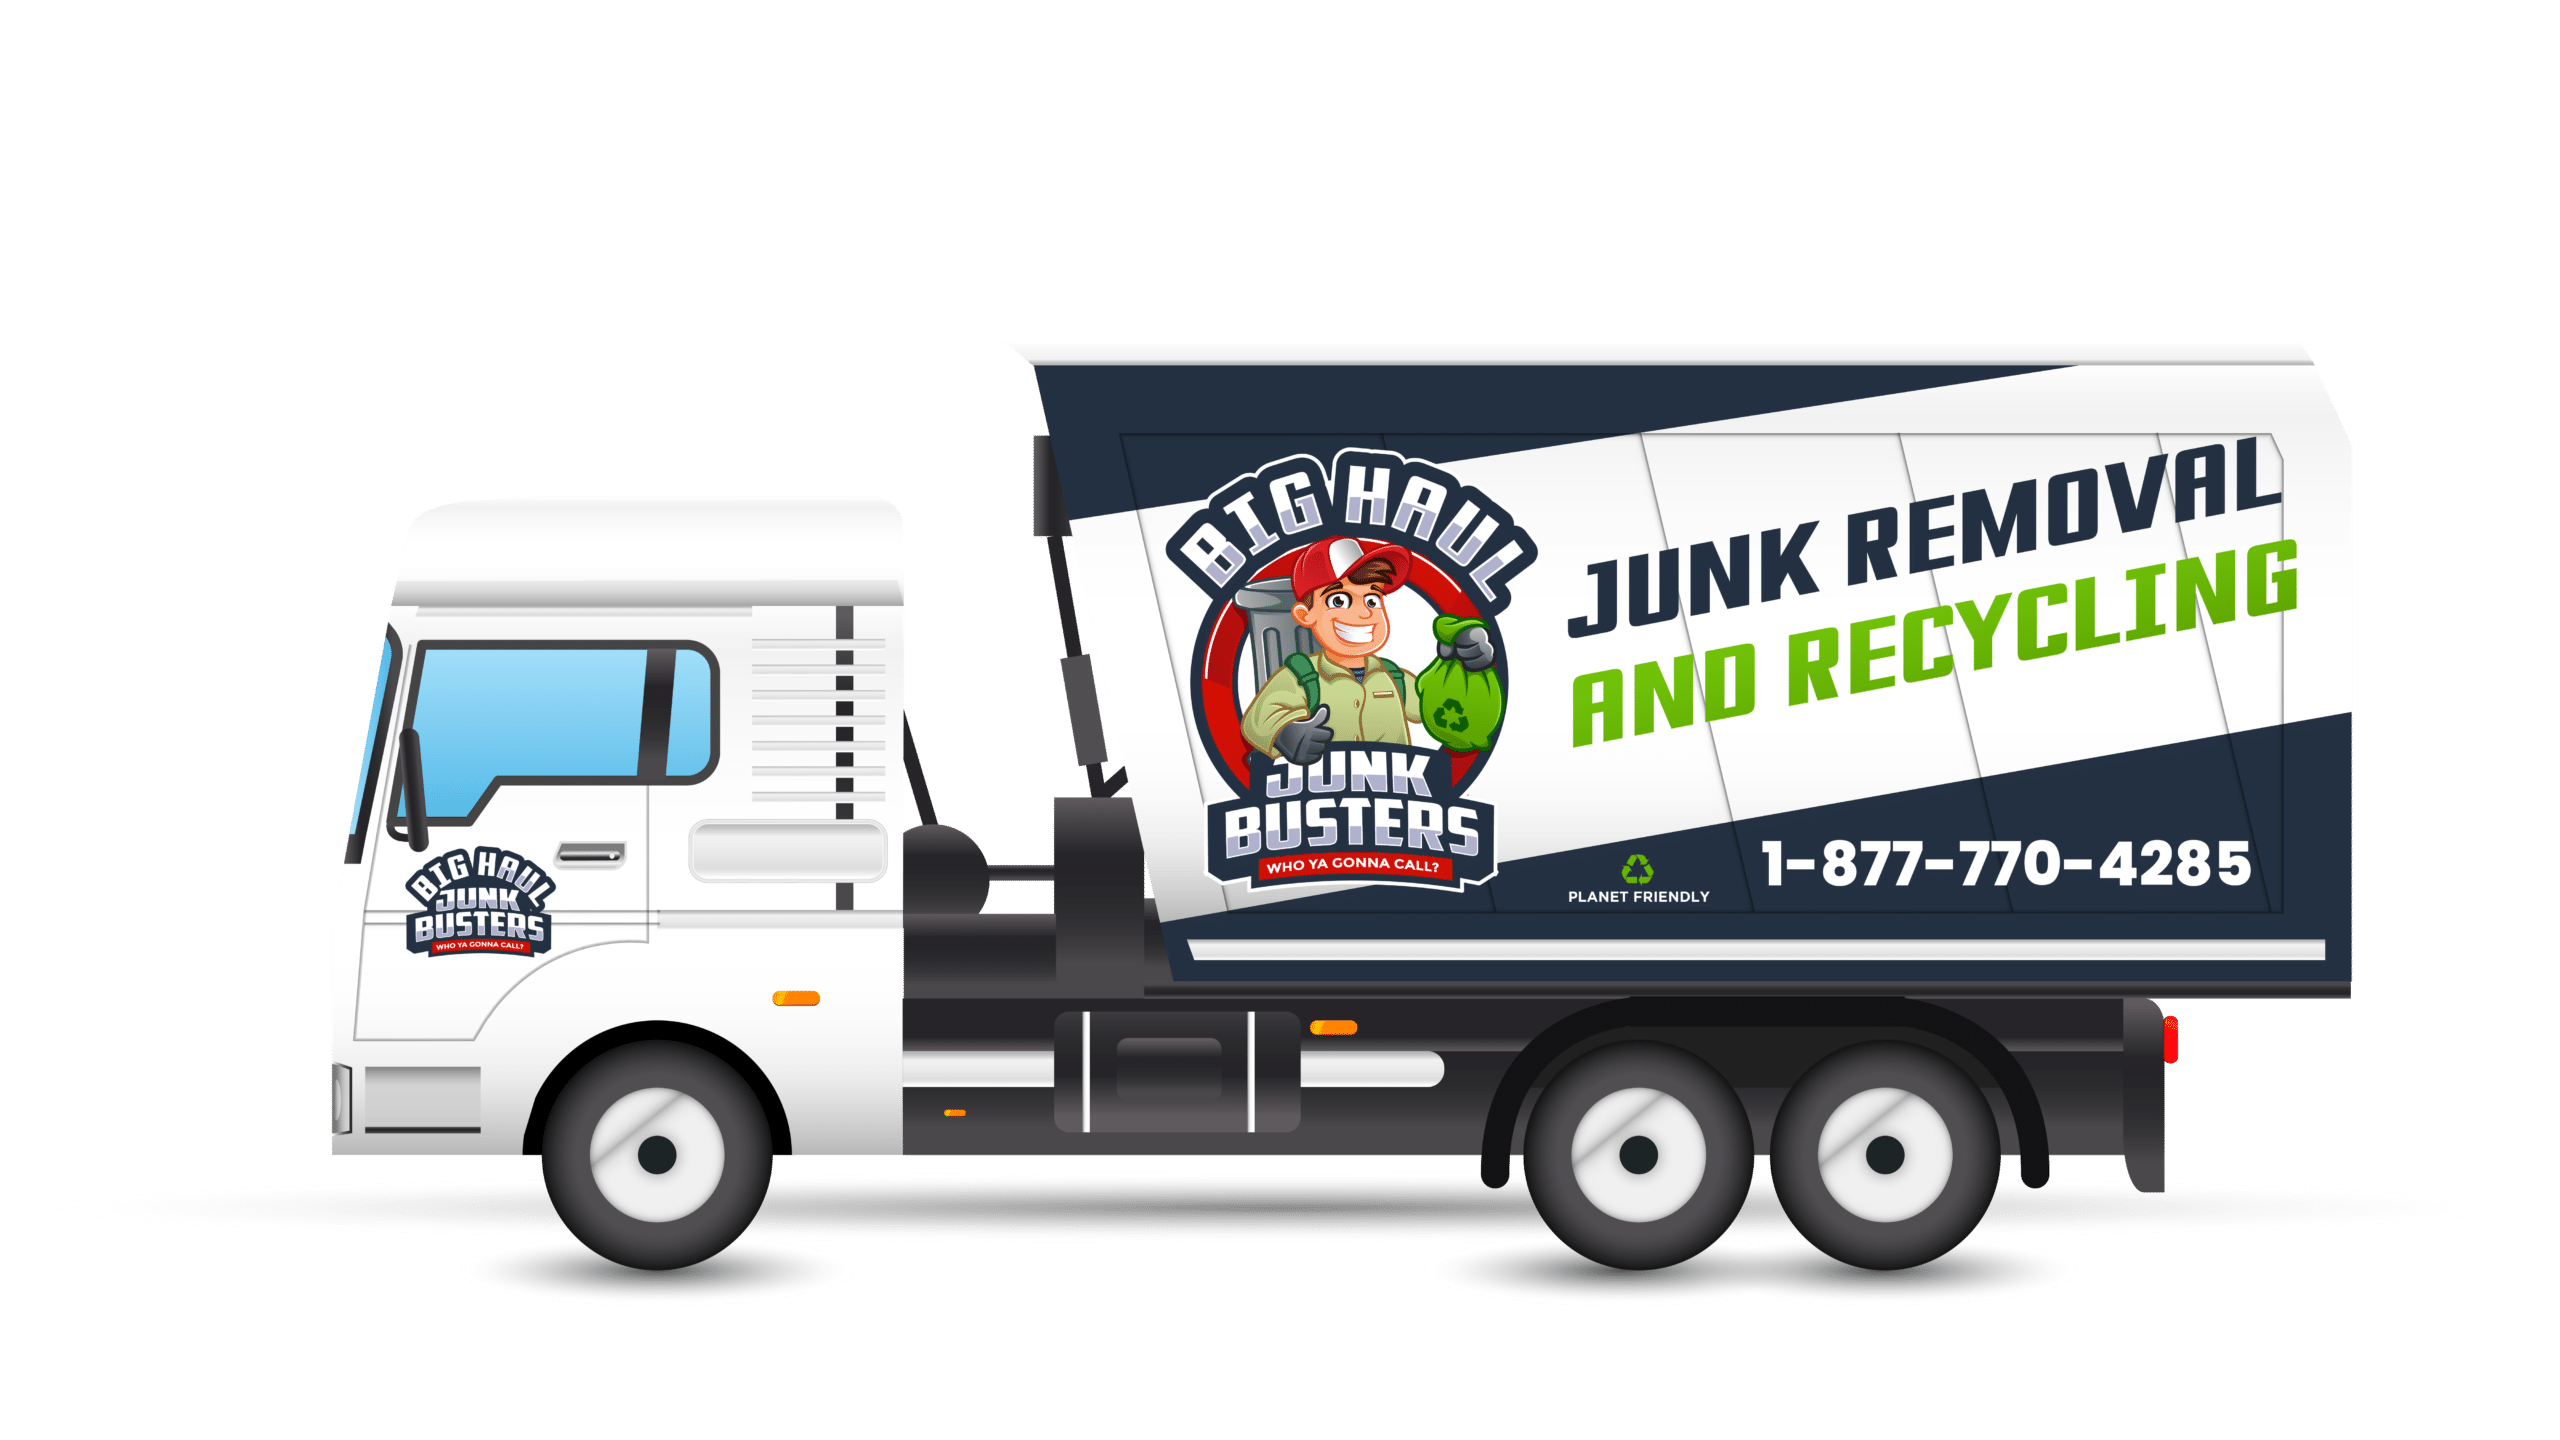 Big Haul Junk Removal Truck